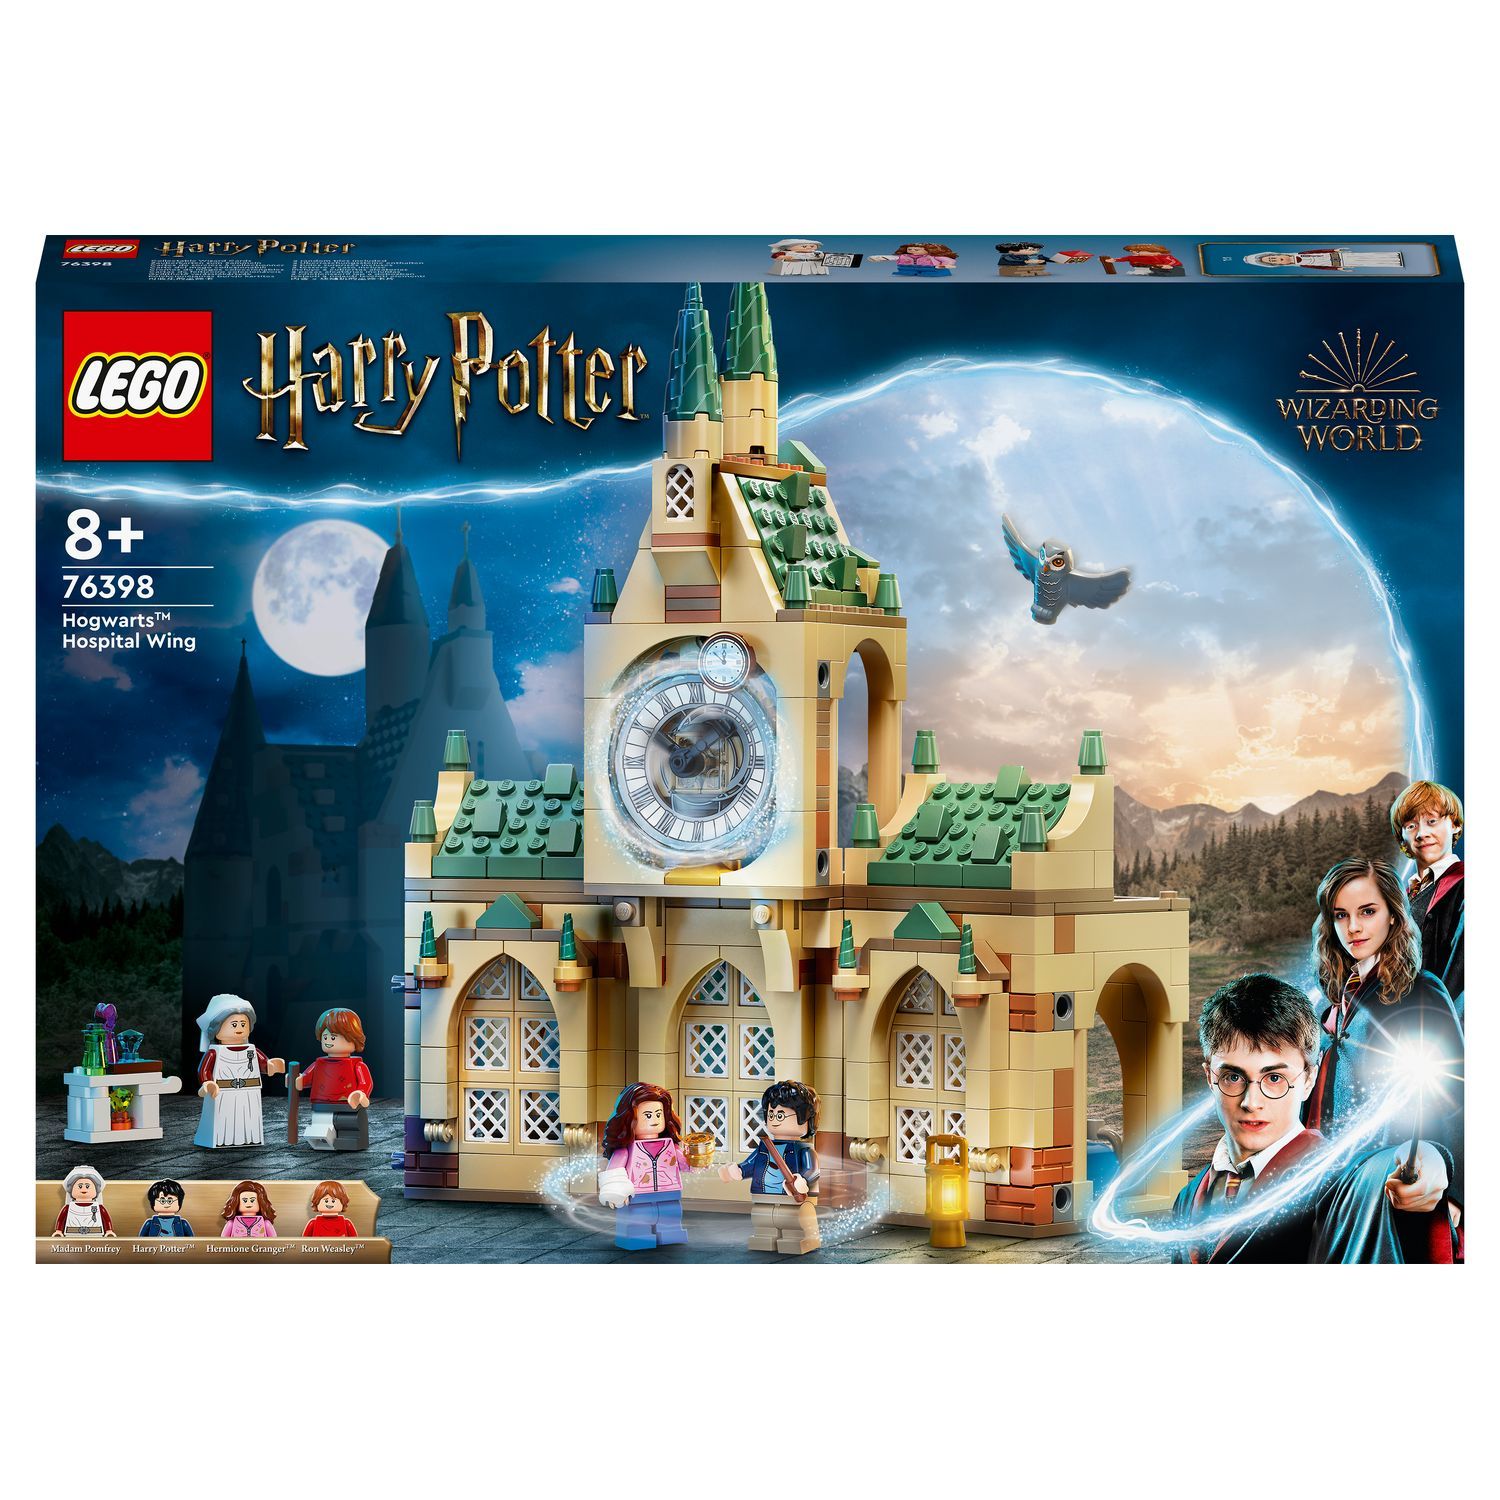 ▻ LEGO Harry Potter Collection : bientôt disponible aussi sur